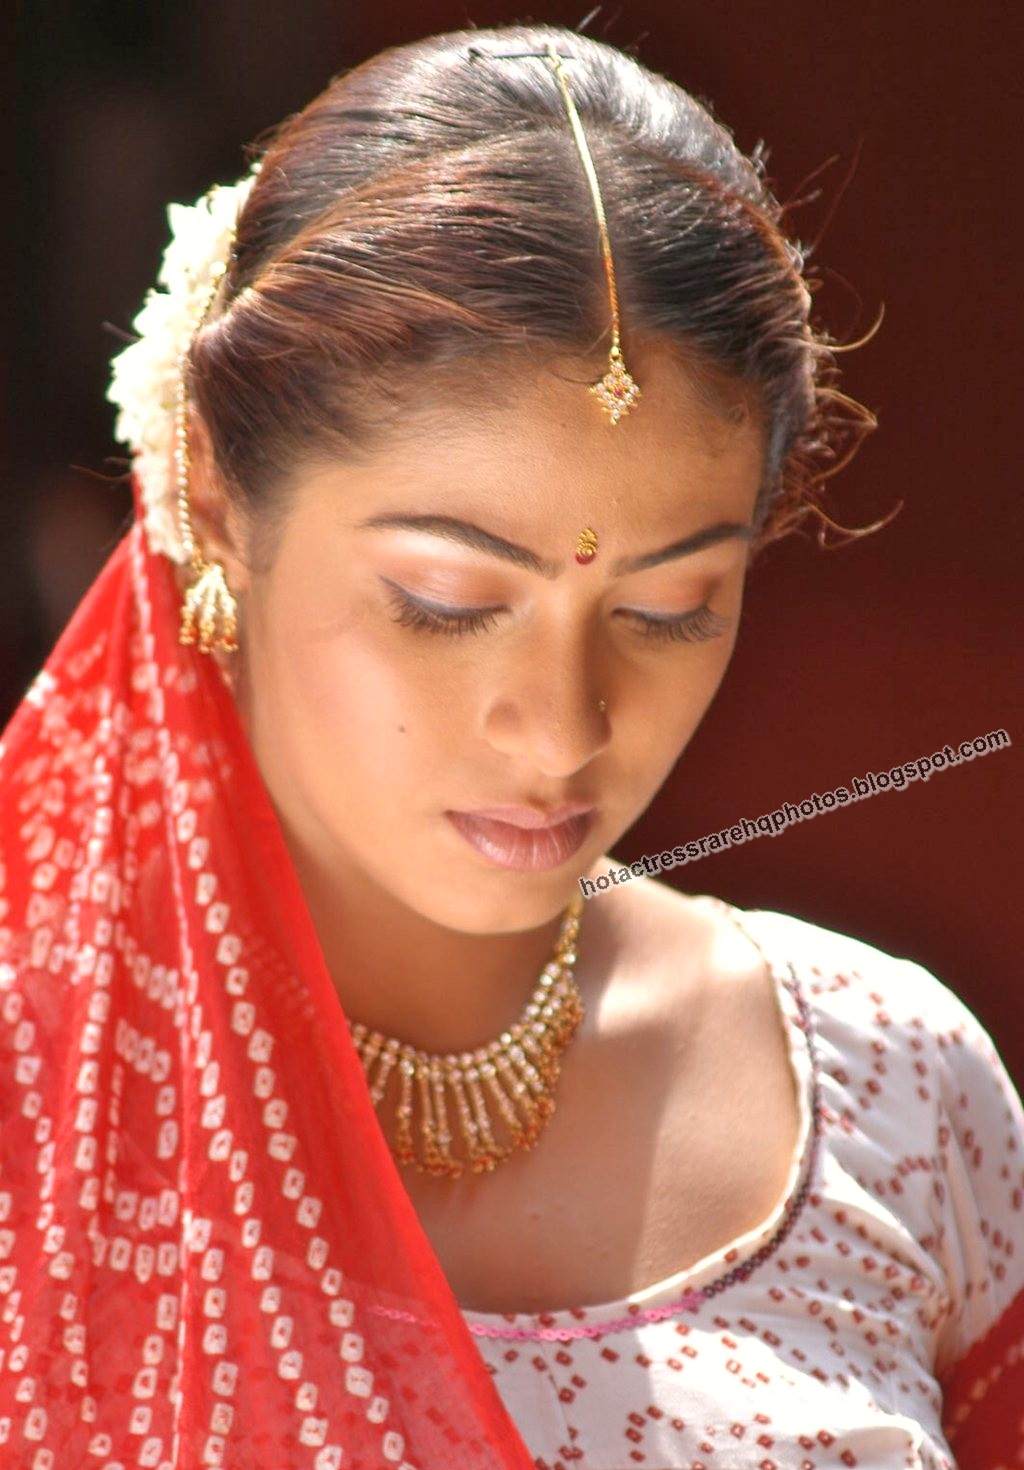 Hot Indian Actress Rare Hq Photos Hot Tamil Actress Sada Unreleased Beautiful Old Photoshoot